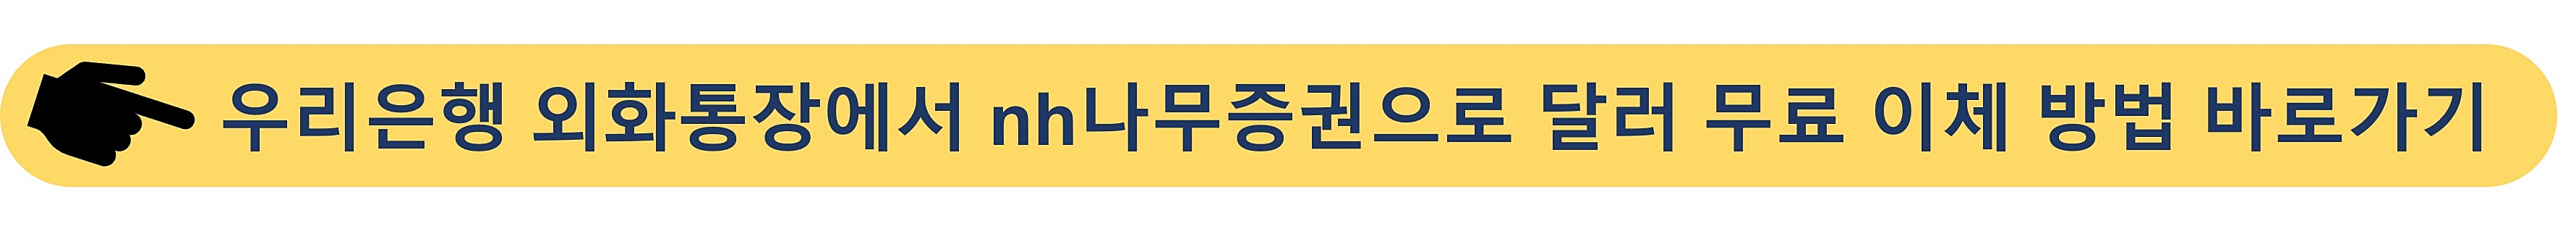 우리은행 외화통장-nh나무증권